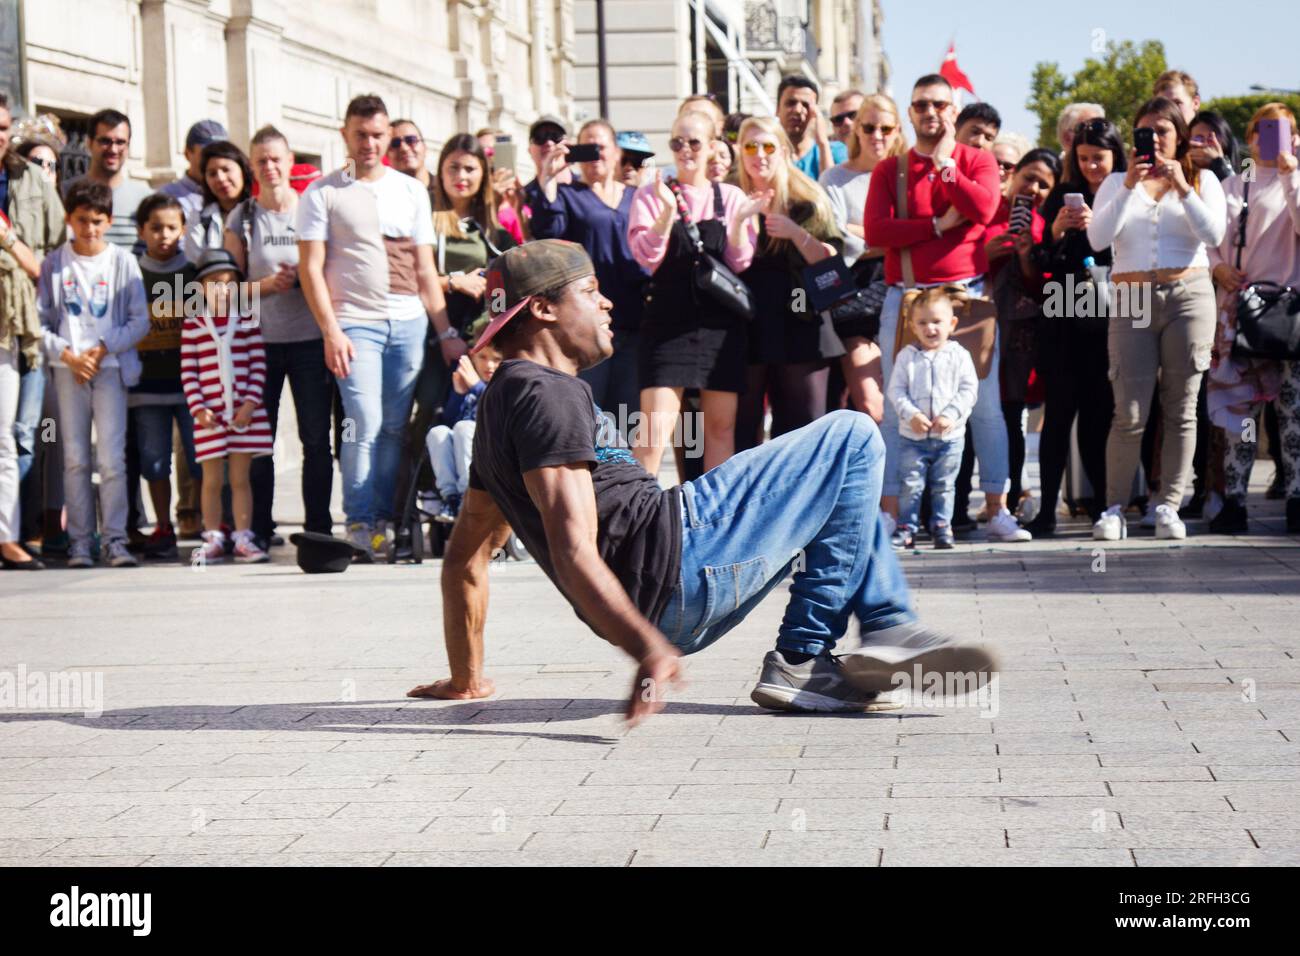 Paris, France - September 24, 2017: Street break dance show Stock Photo